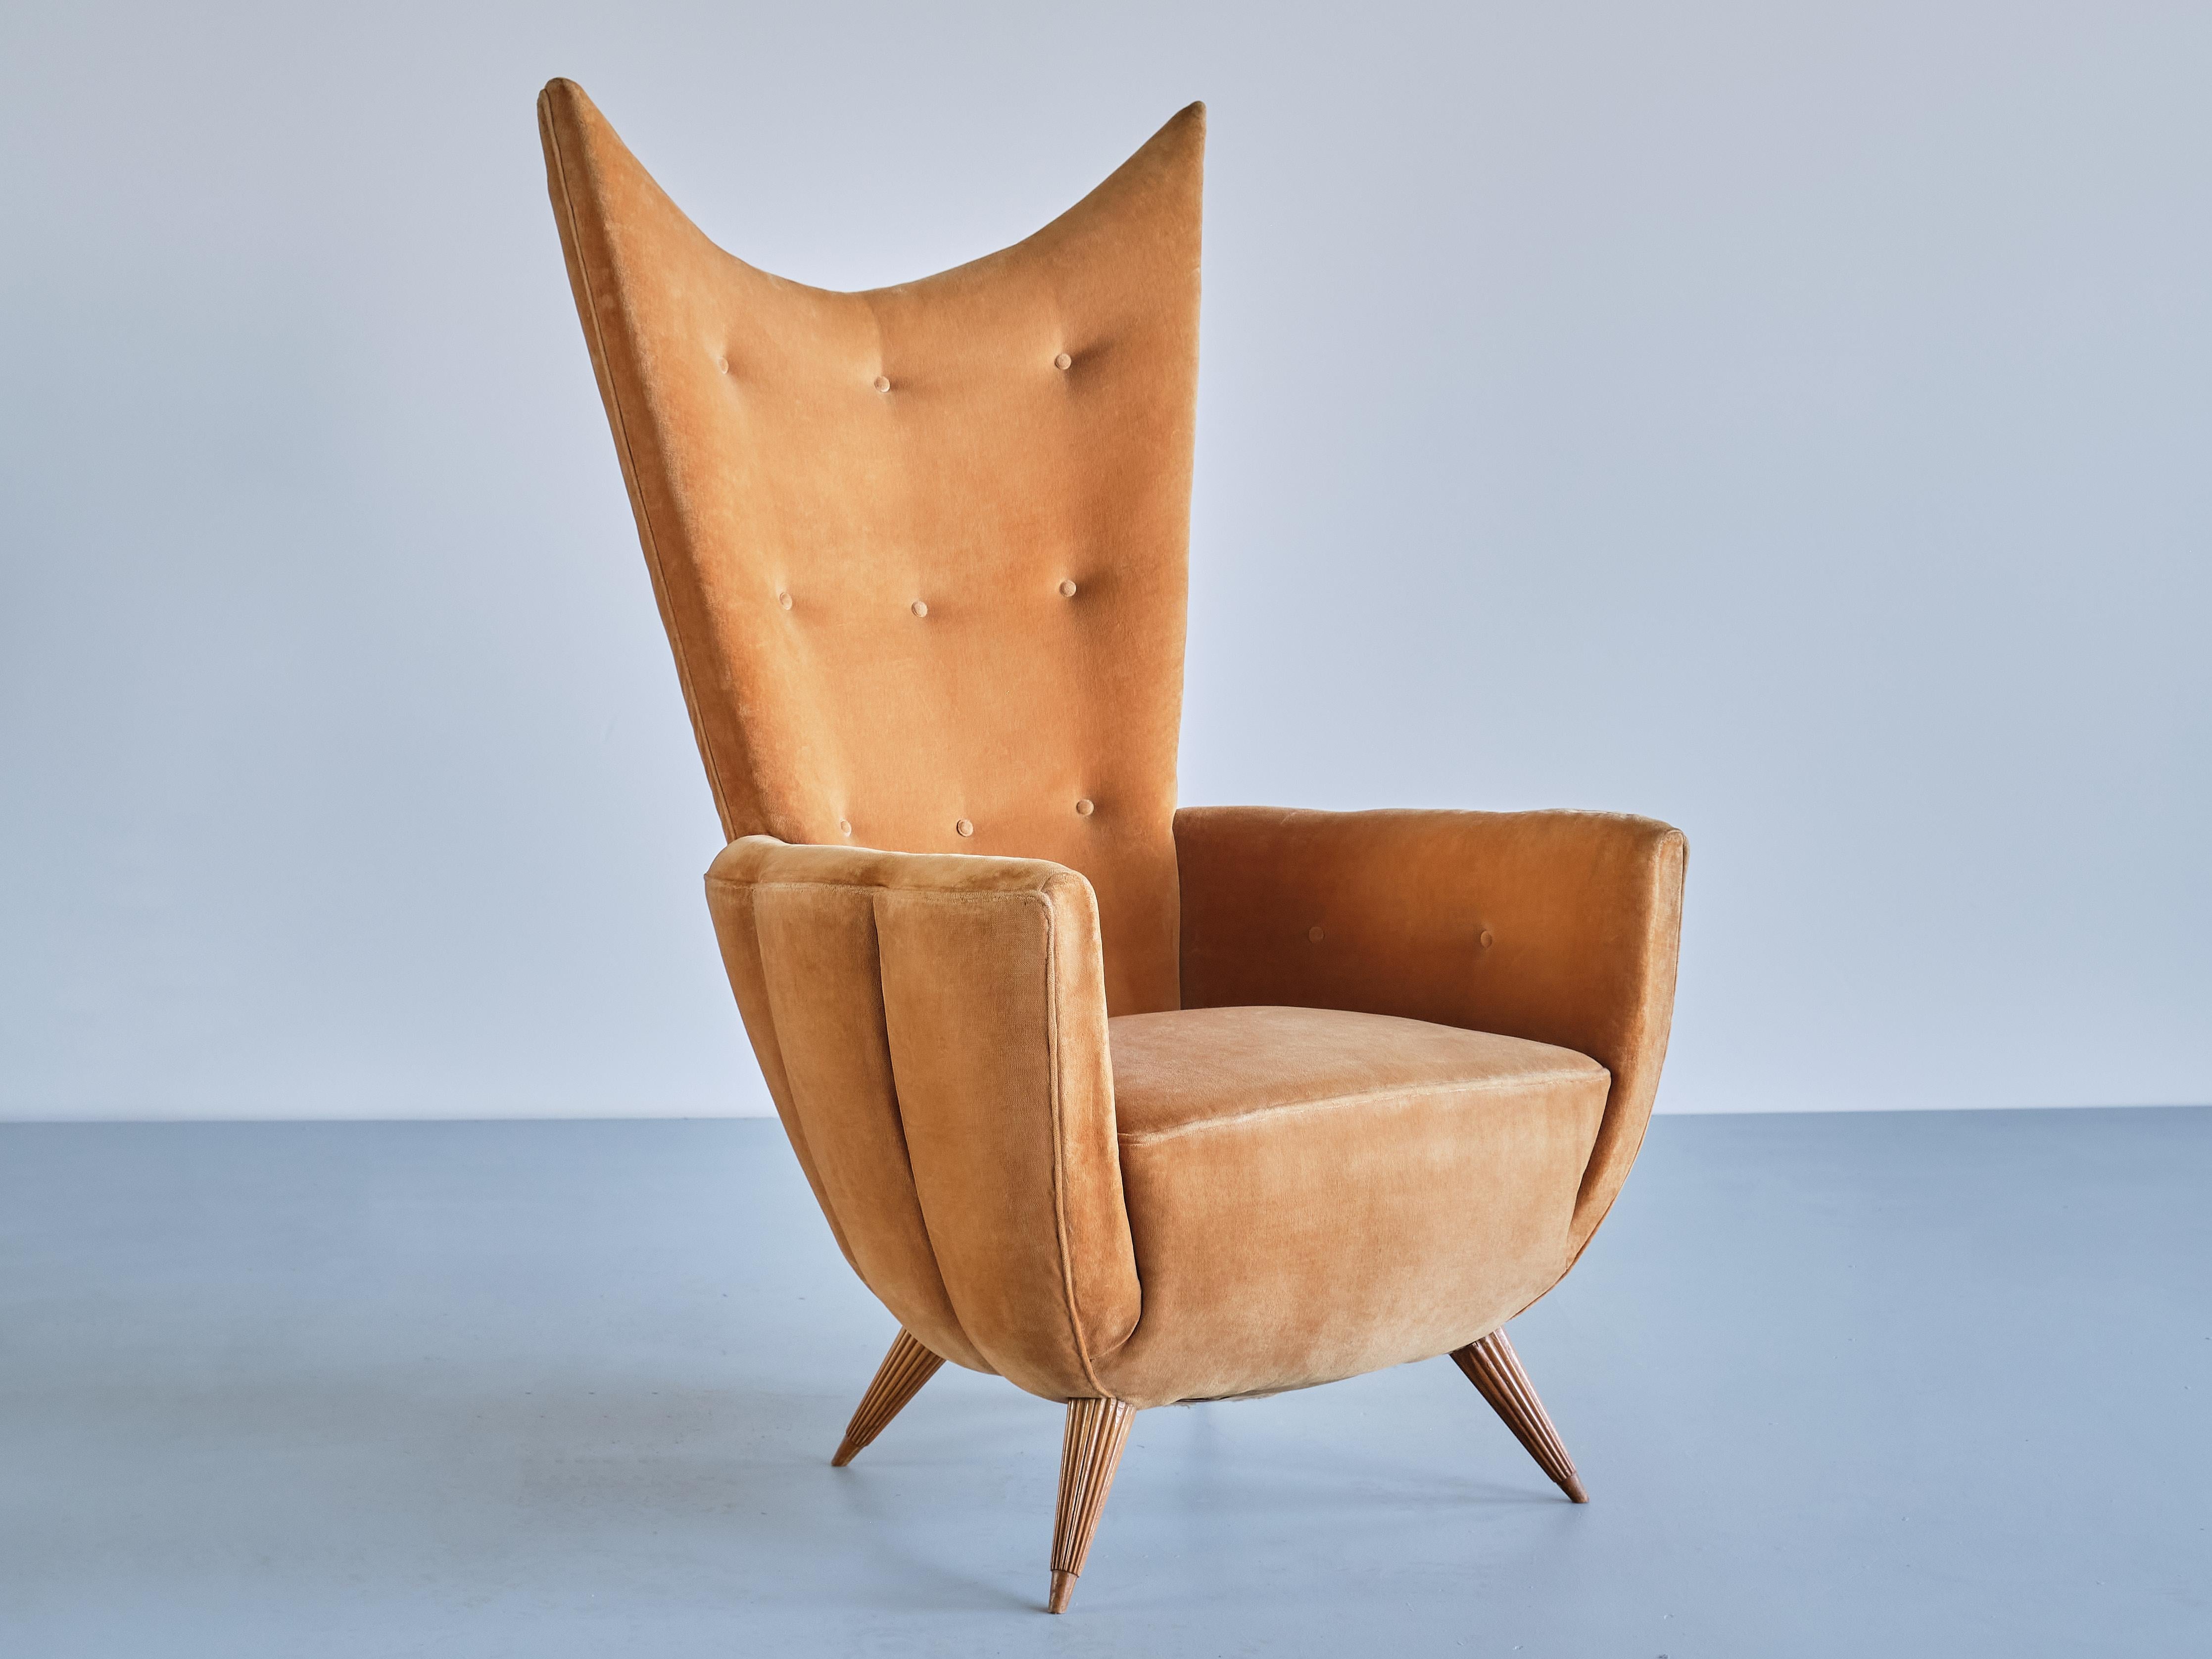 Ce fauteuil exceptionnellement rare a été conçu par Guglielmo Ulrich dans les années 1940. 
Son design élégant est marqué par les lignes distinctes et incurvées du dossier à oreilles et les lignes arrondies des accoudoirs et de la façade. Comme la